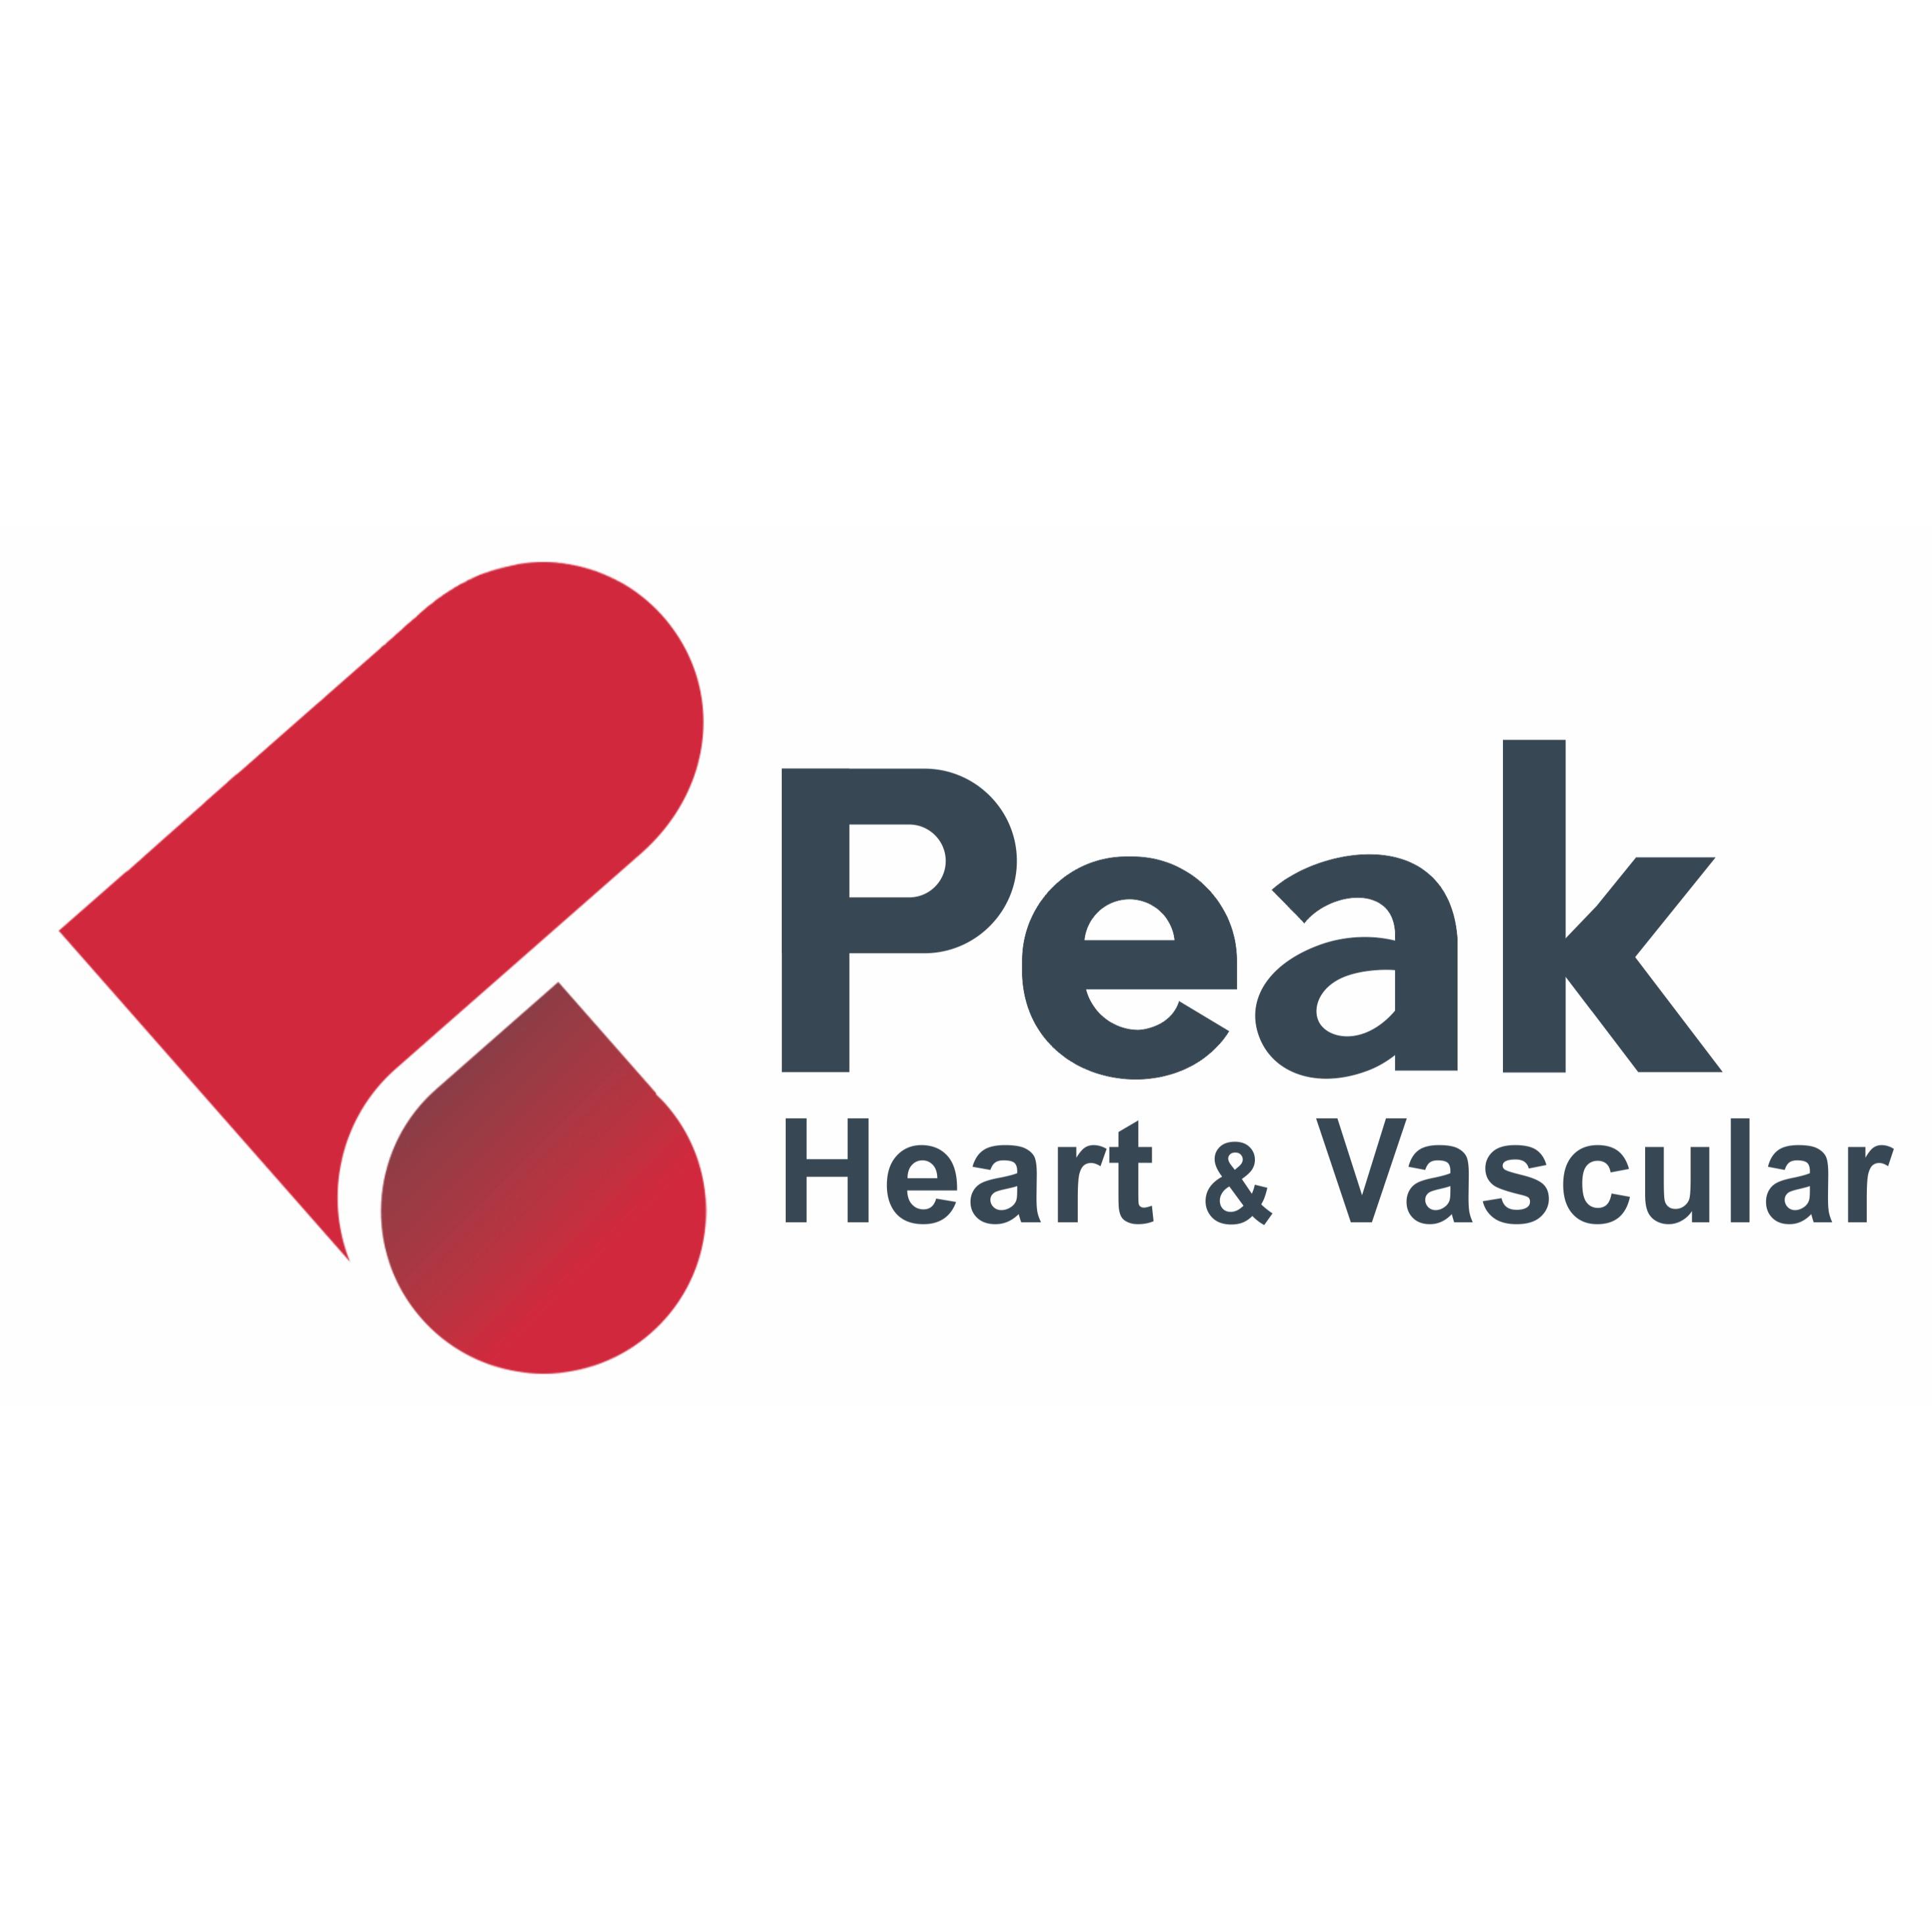 Peak Heart & Vascular - Missouri